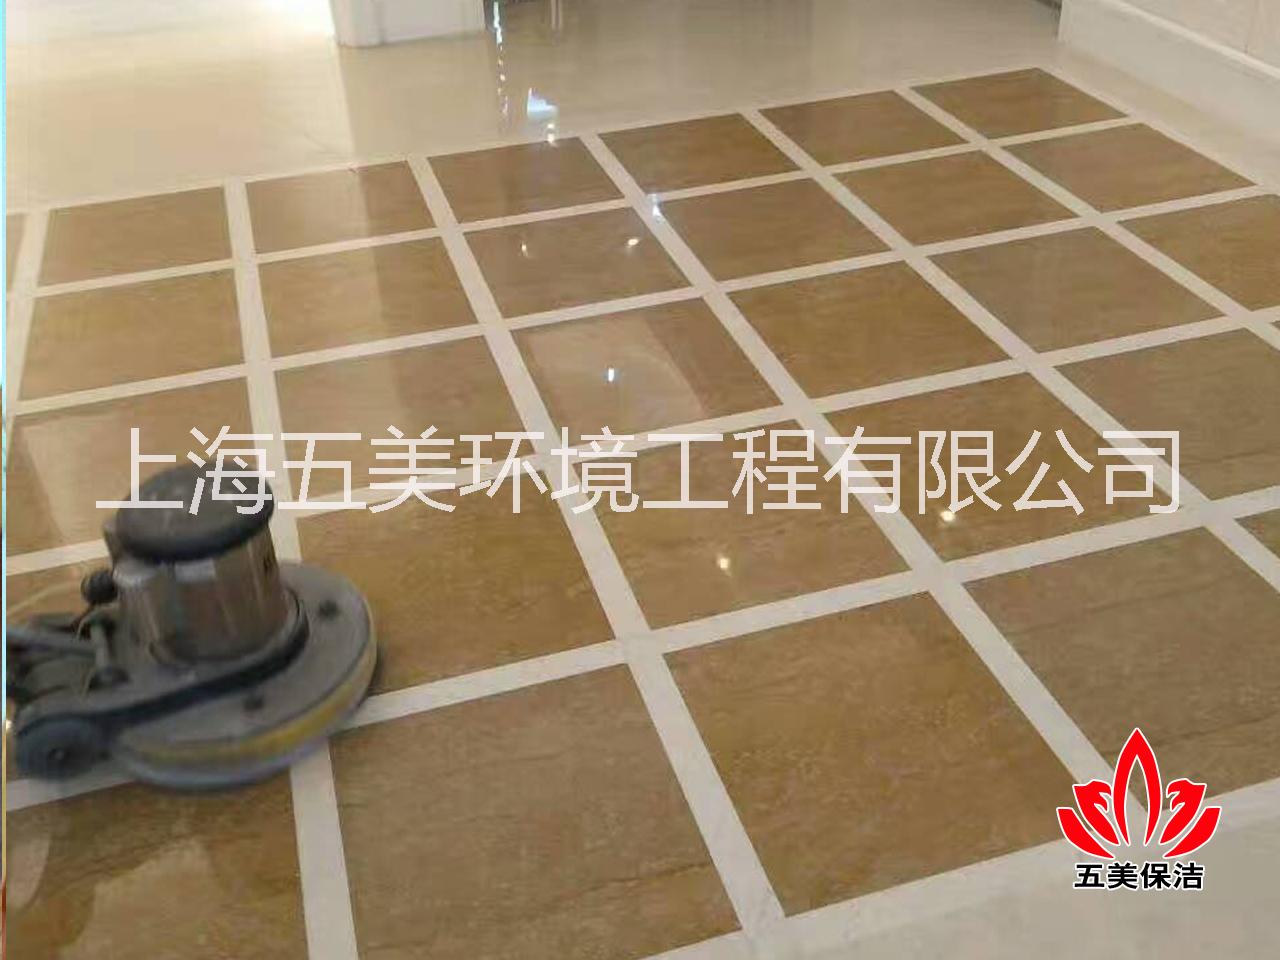 上海市上海地毯清洗,浦东地毯清洁公司厂家上海地毯清洗,上海浦东地毯清洁公 上海地毯清洗,浦东地毯清洁公司